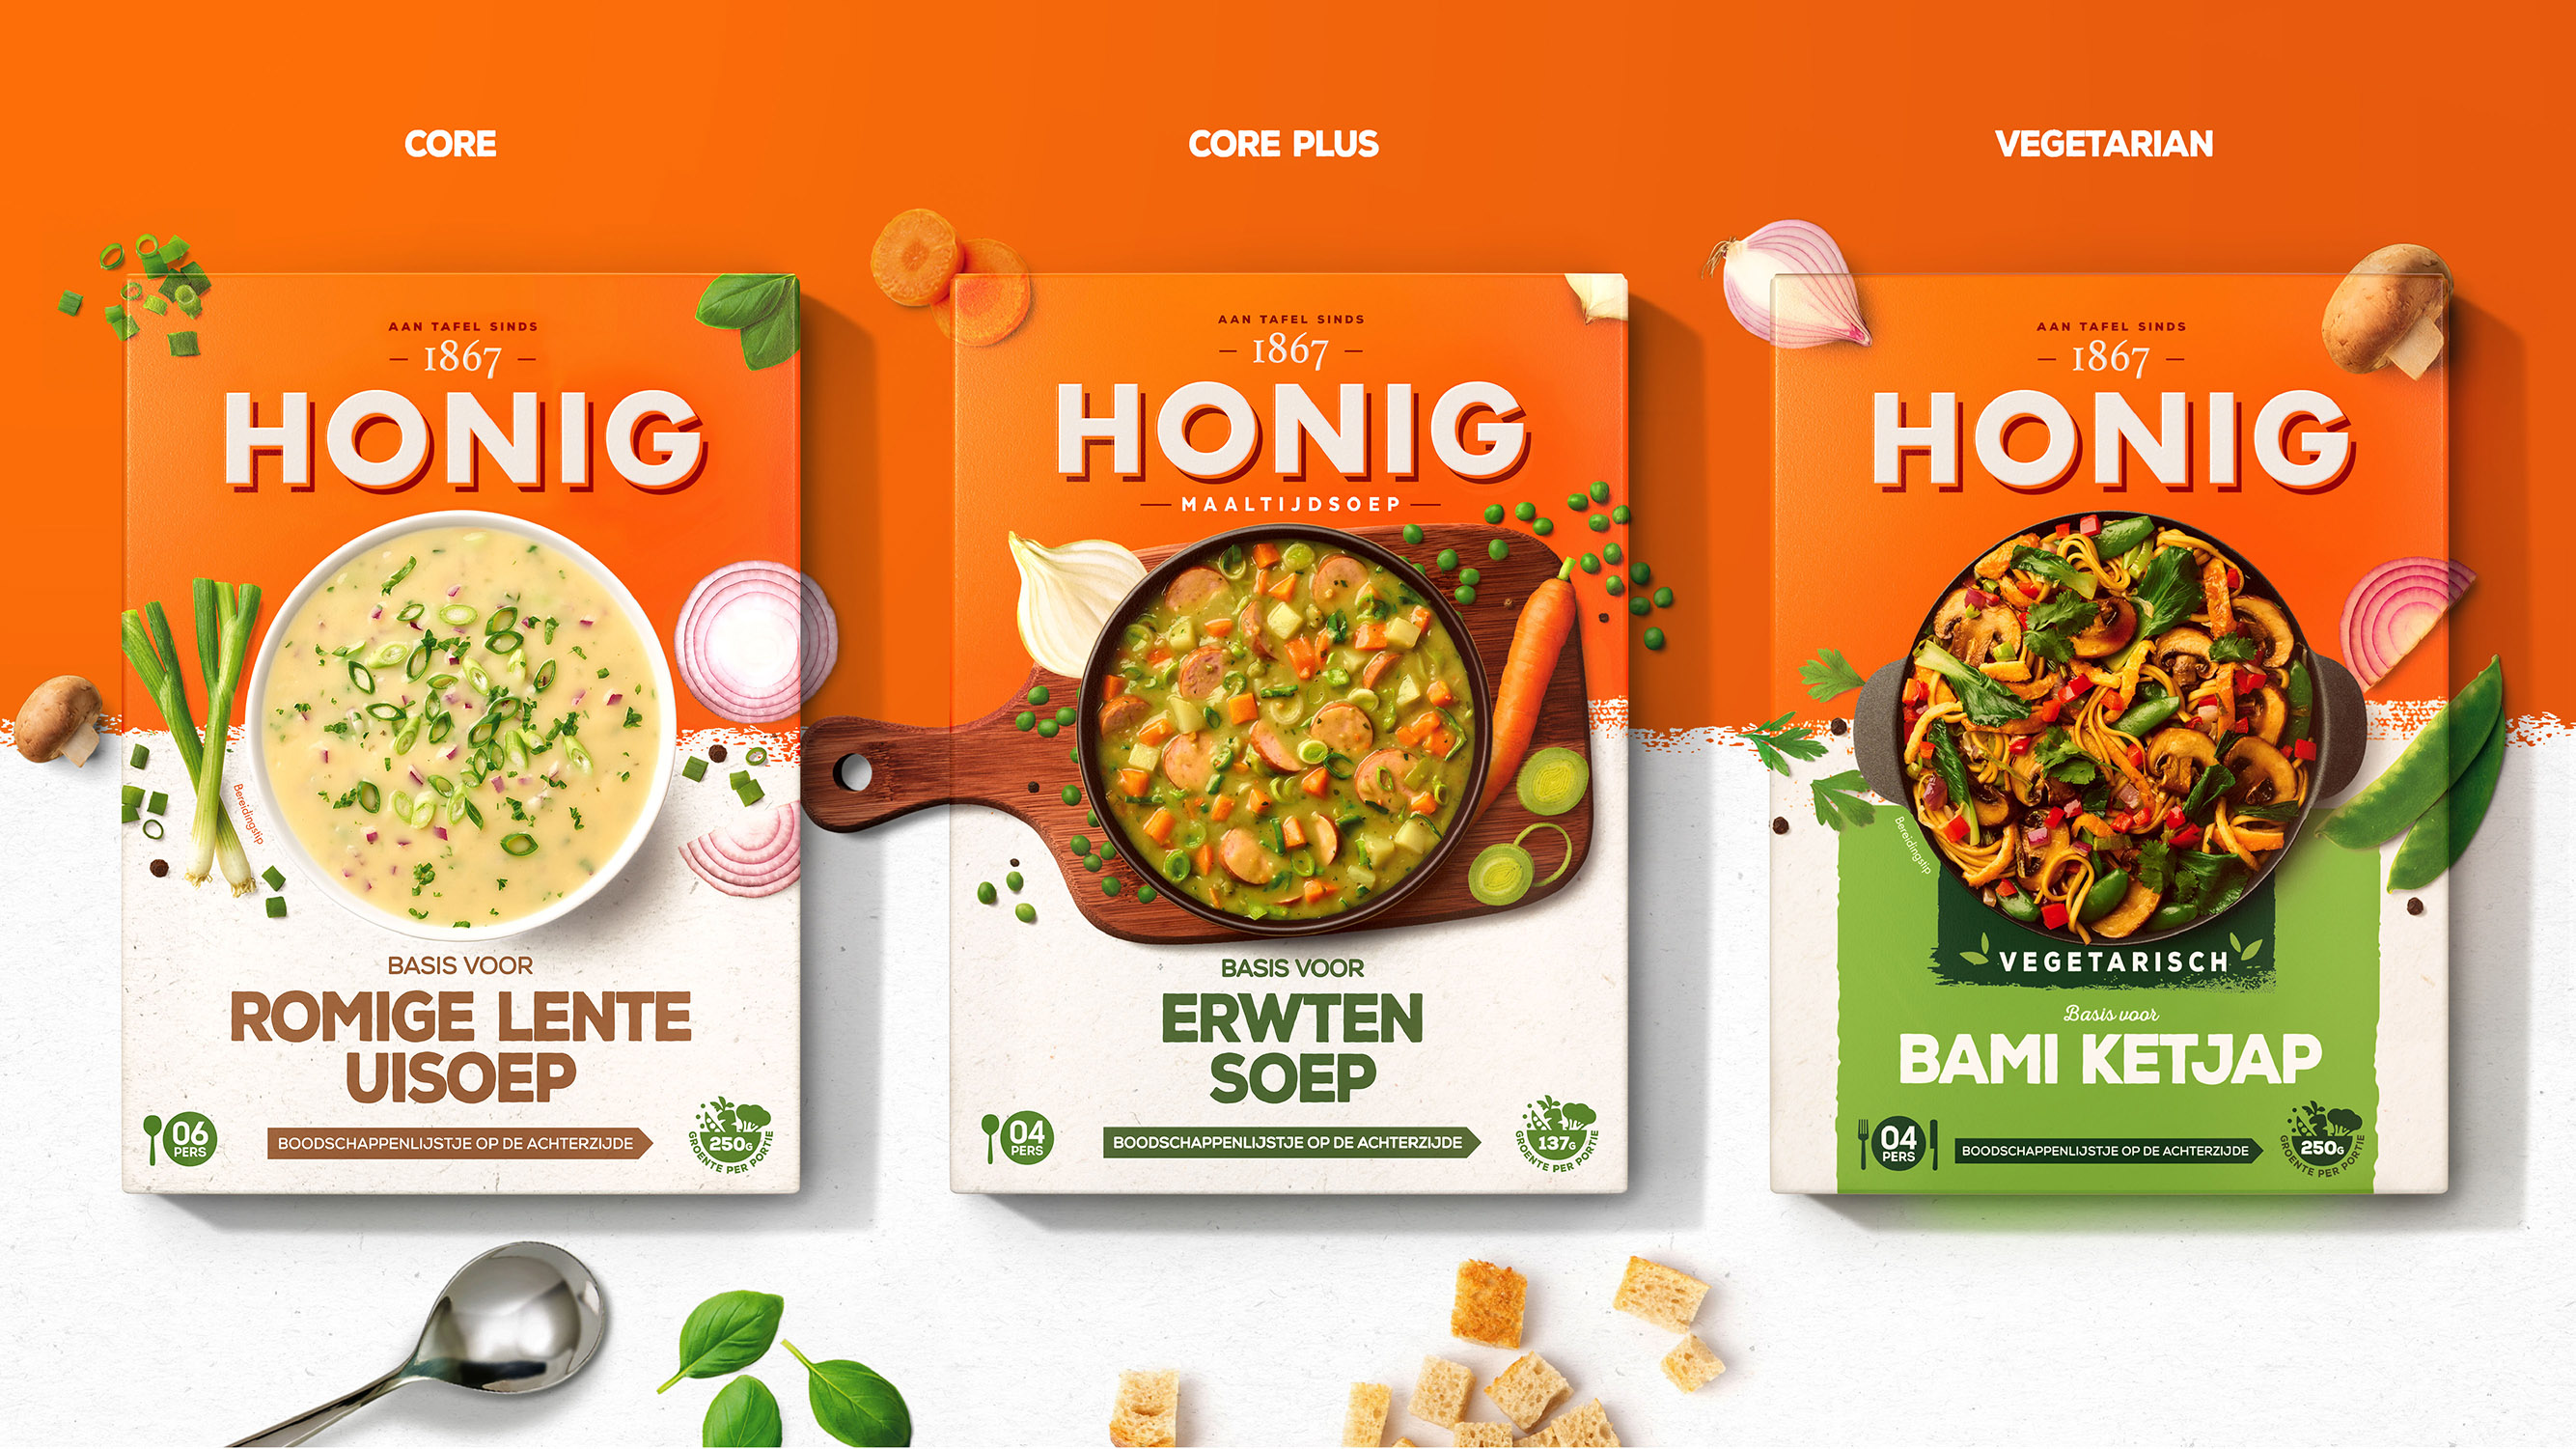 食品包装设计分享：演绎荷兰经典——PB Creative